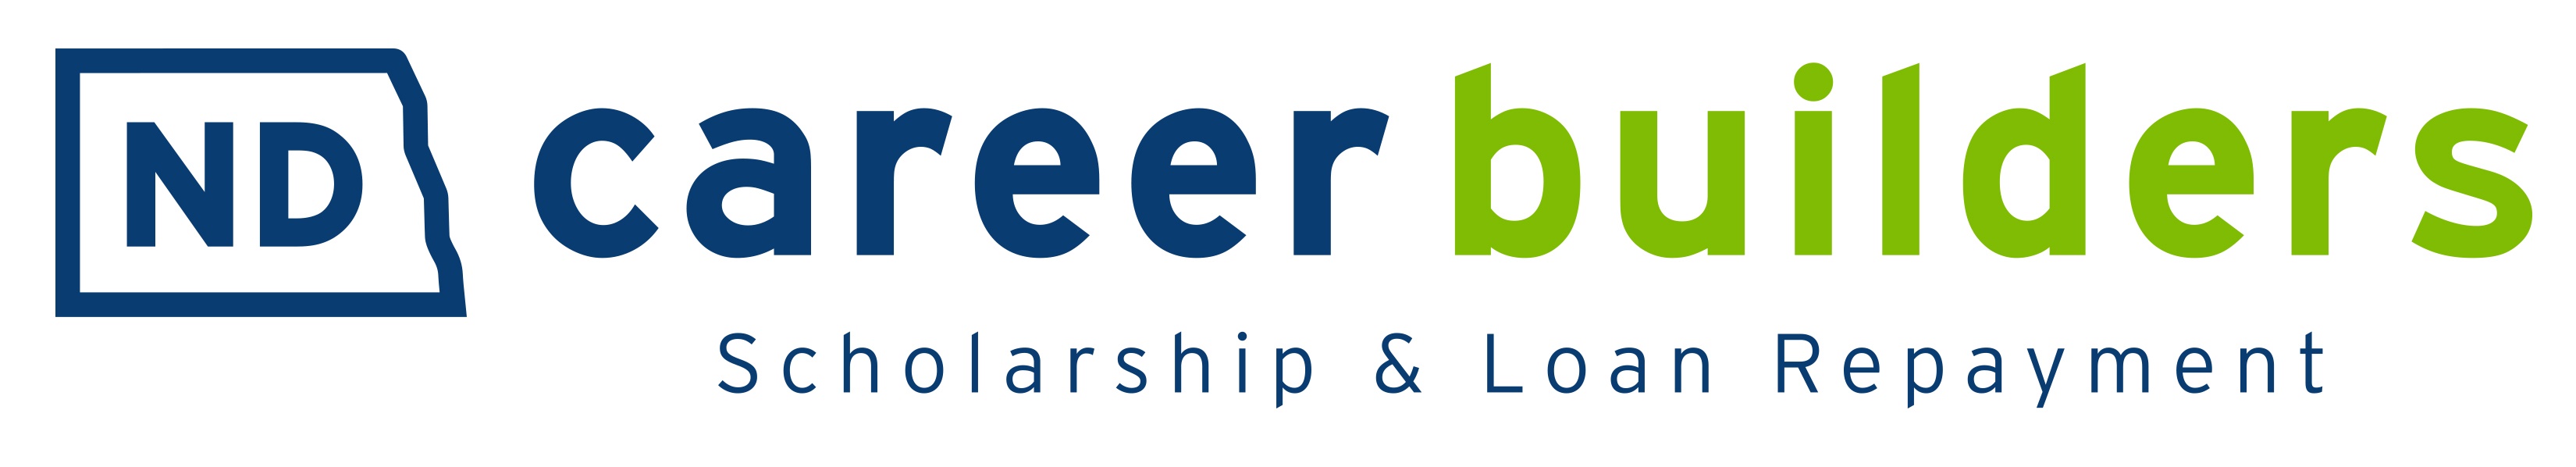 ND Career Builders logo